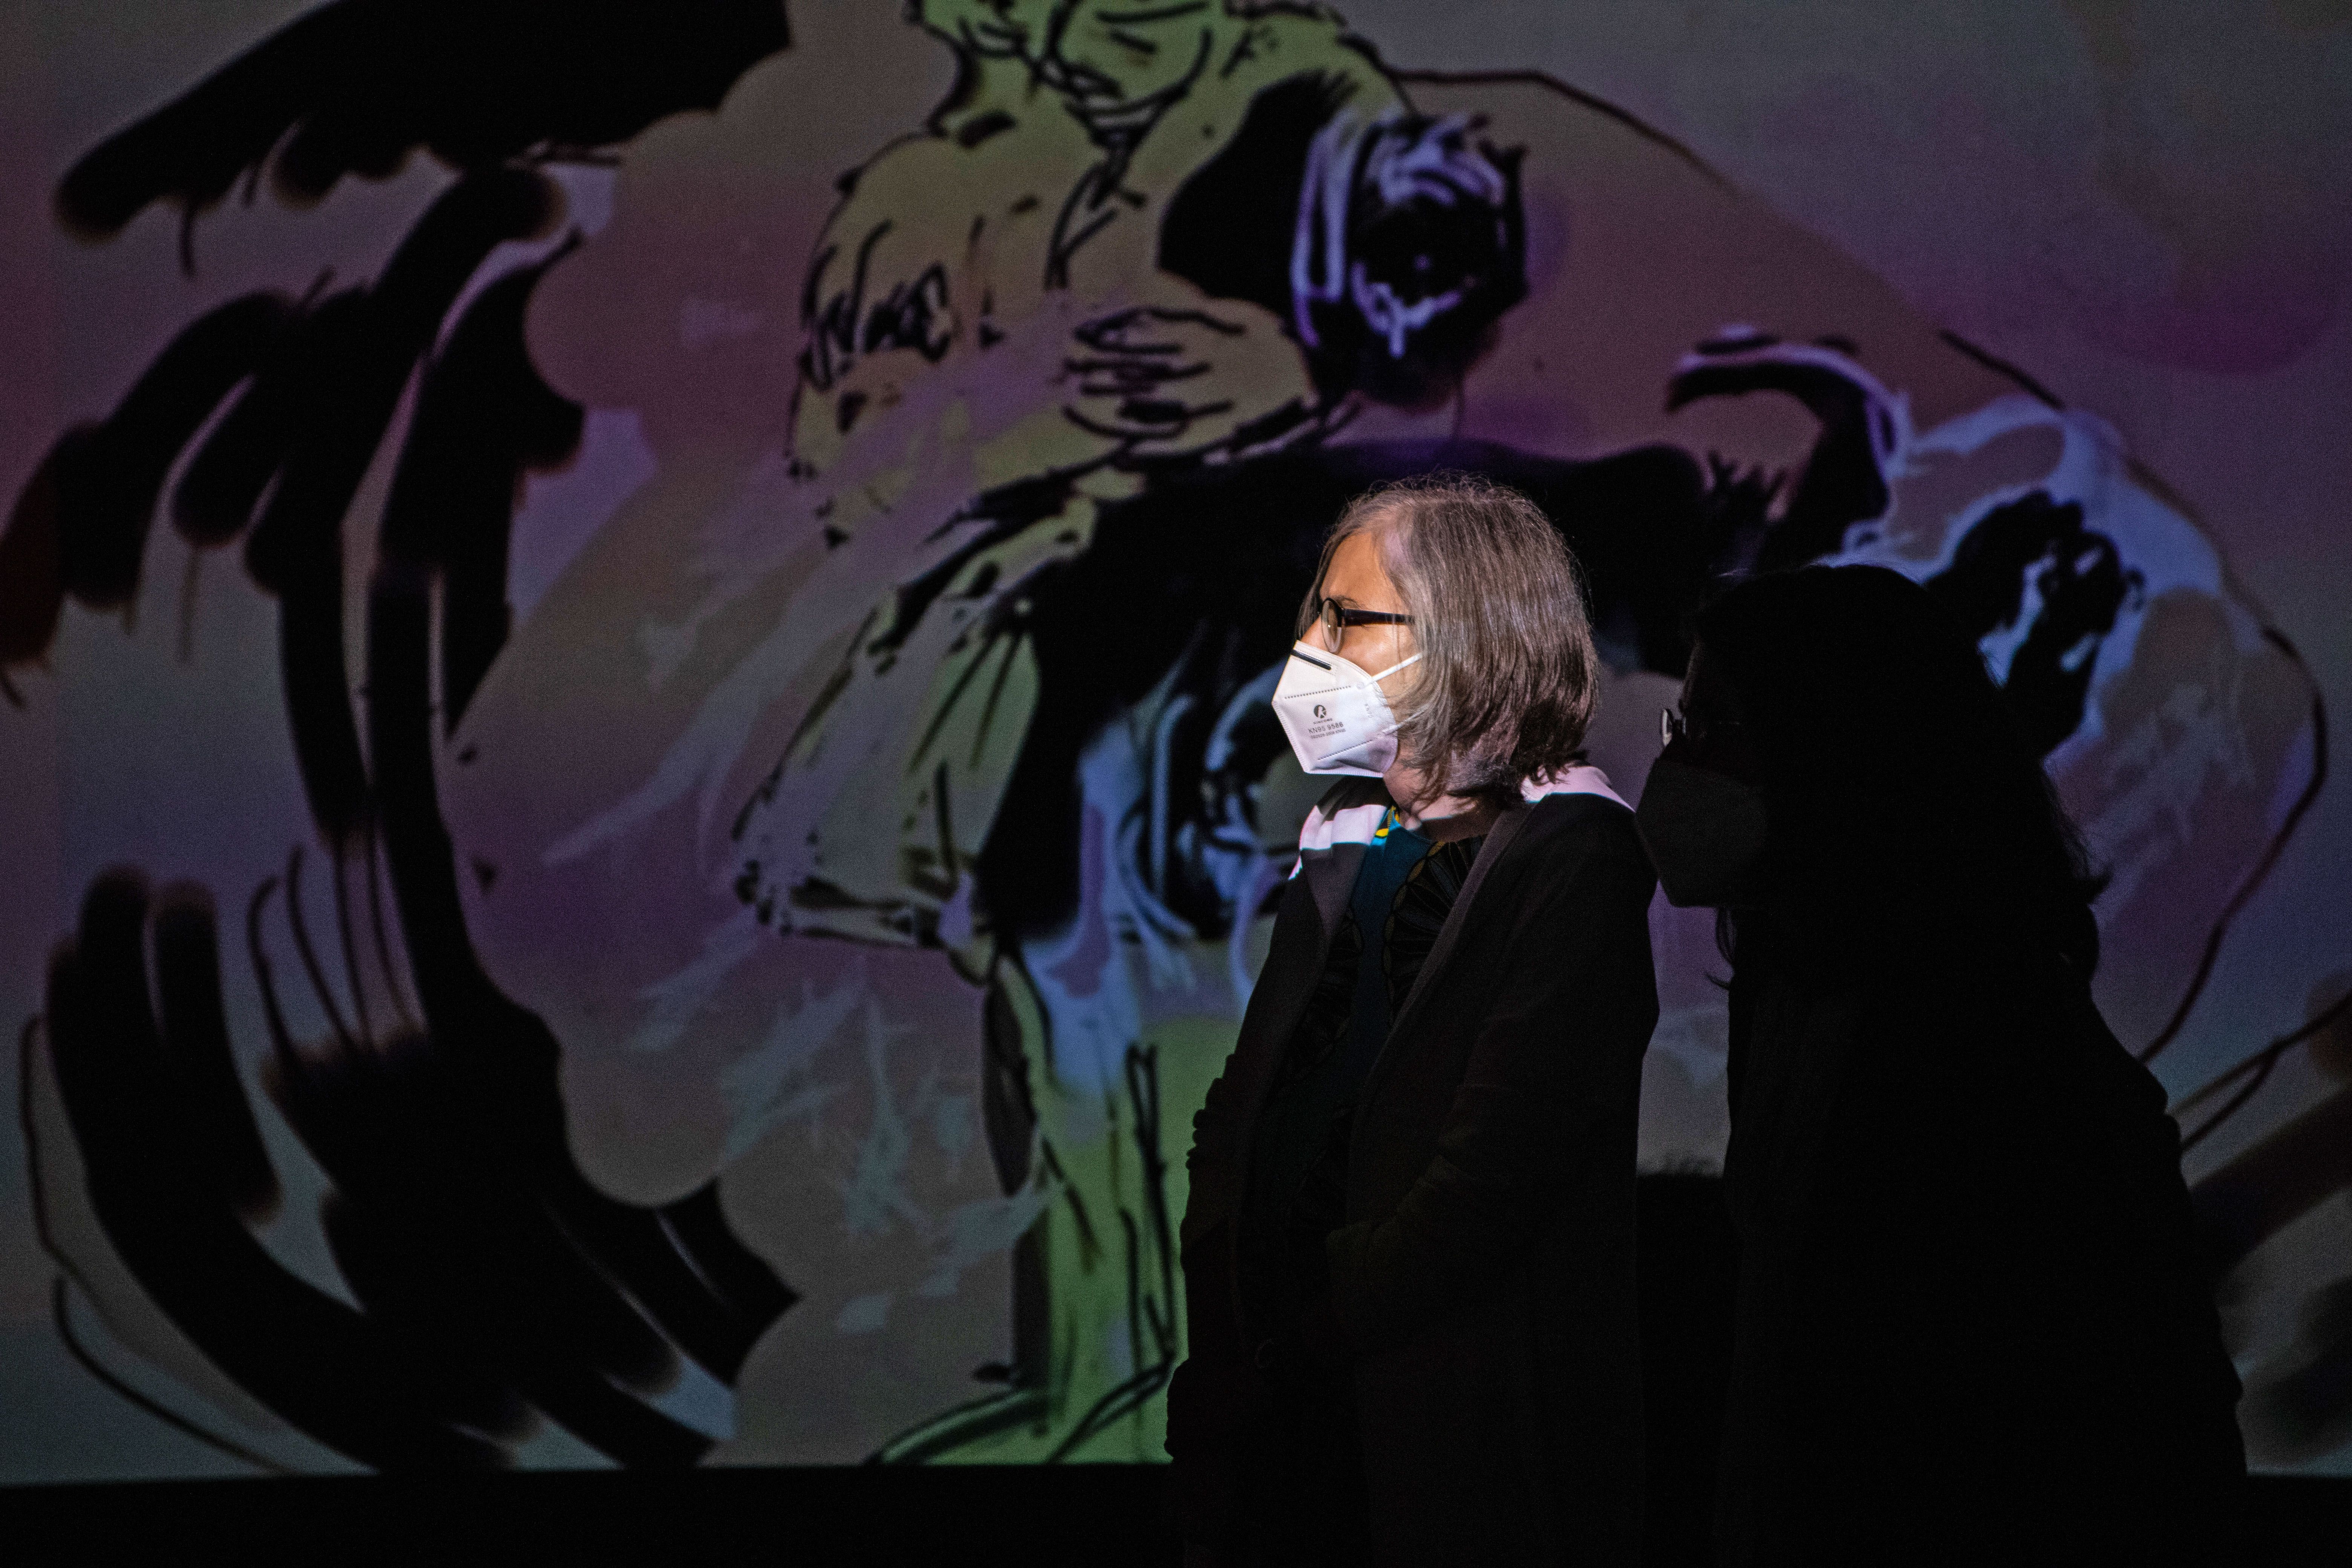 La Fundació Miró expone 'No me oyes', un "guión gráfico" de la profecía de Casandra